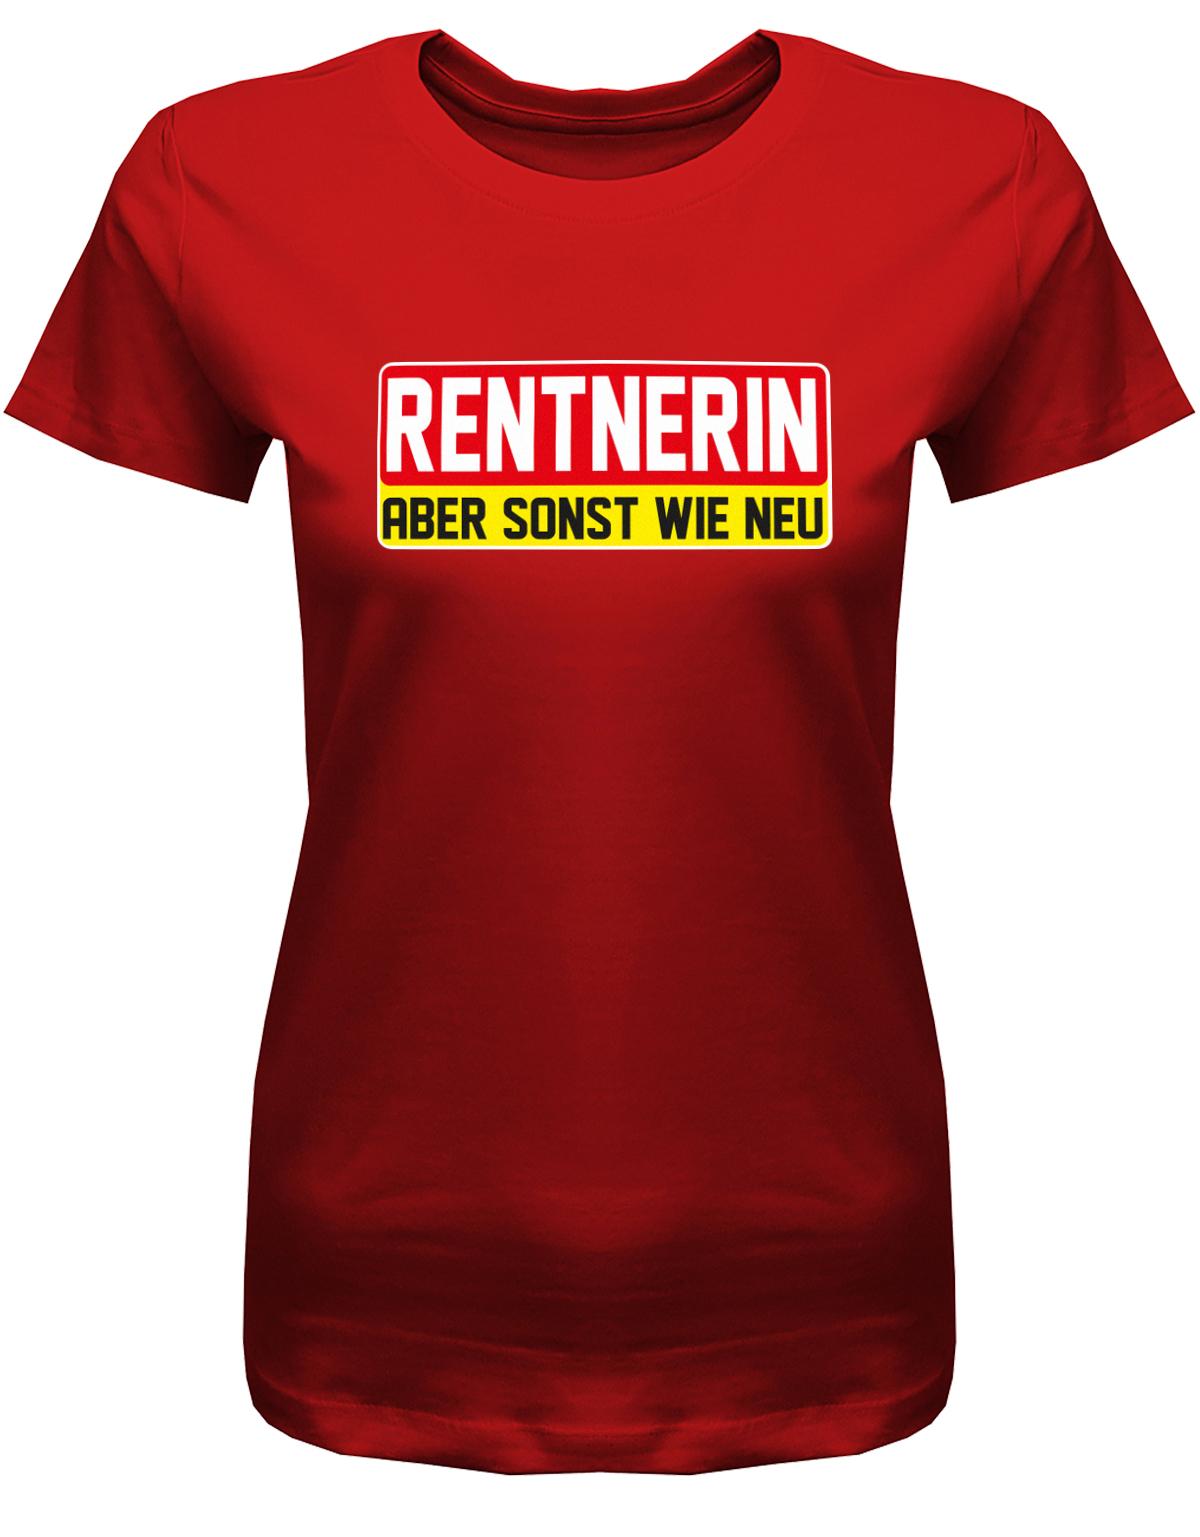 Rentnerin-aber-sonst-wie-neu-Damen-rente-Shirt-Rot